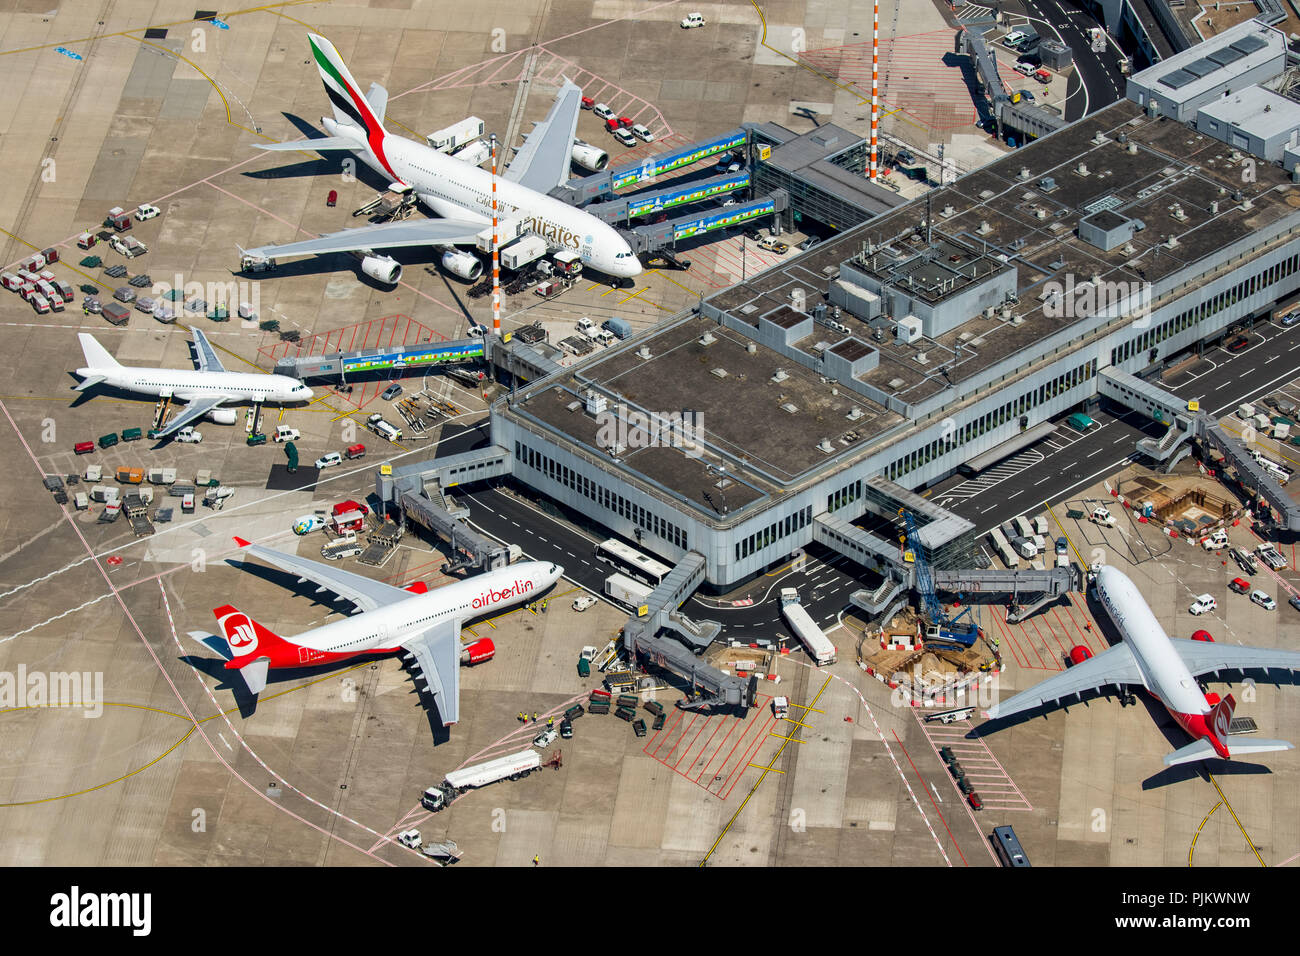 L'aéroport de Düsseldorf, l'aéroport, un Dusseldorf-Lohausen6-EDS Unis Airbus A380-861, à la porte, d'aéronefs Fabricants, Düsseldorf, Rhénanie du Nord-Westphalie, Allemagne, Banque D'Images